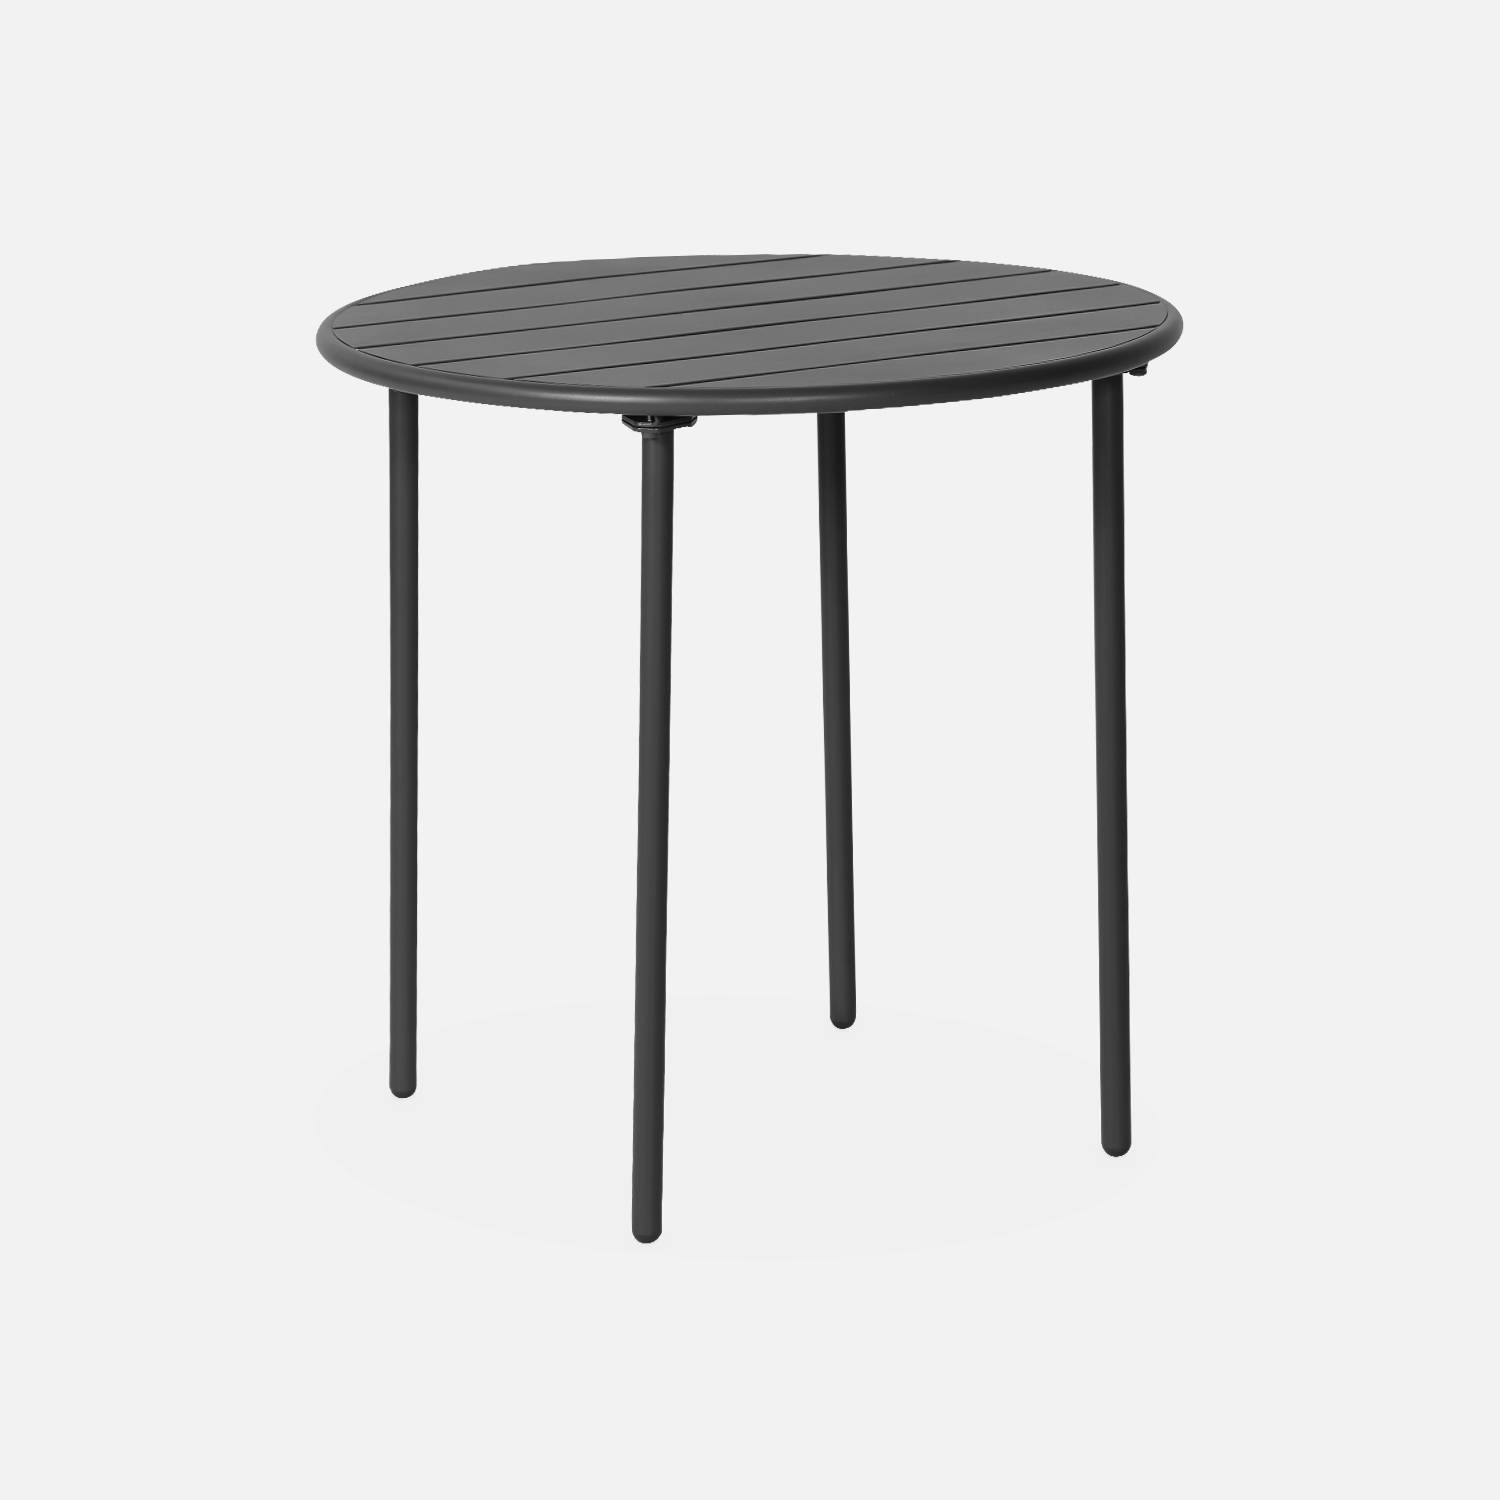 2-seater round steel garden table, Ø75cm, Anthracite | sweeek